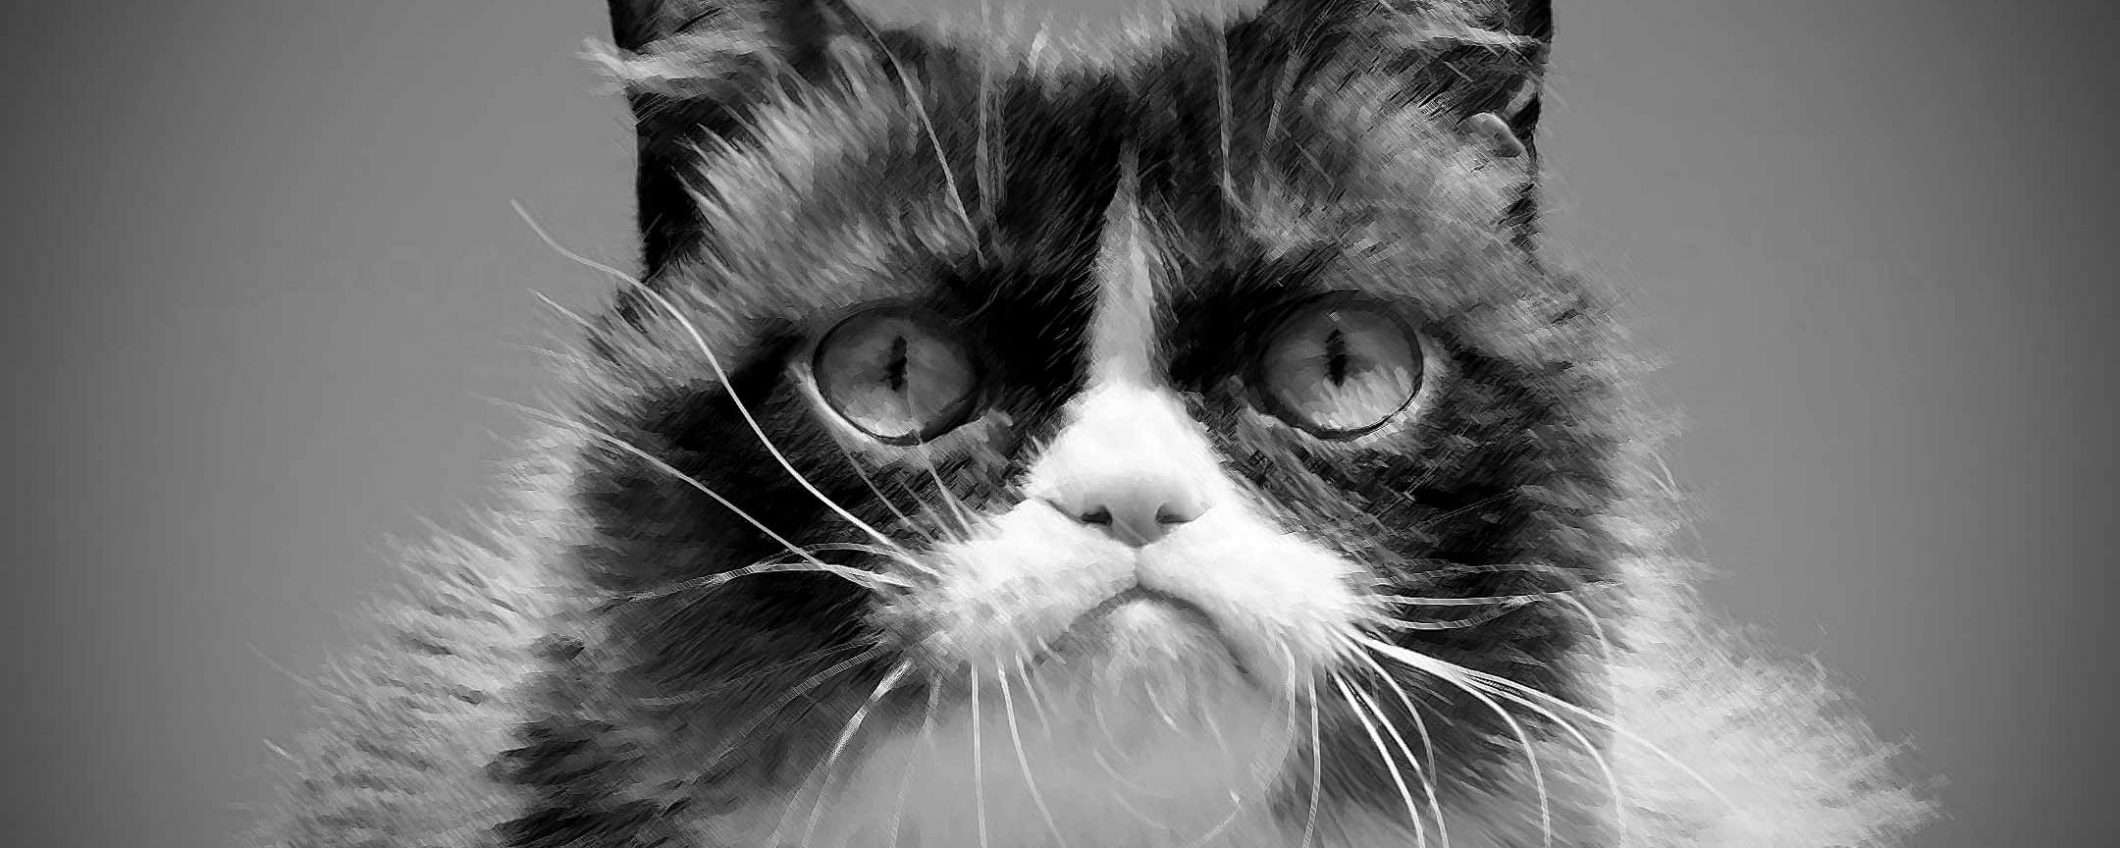 Grumpy Cat è morta: Internet piange il suo meme